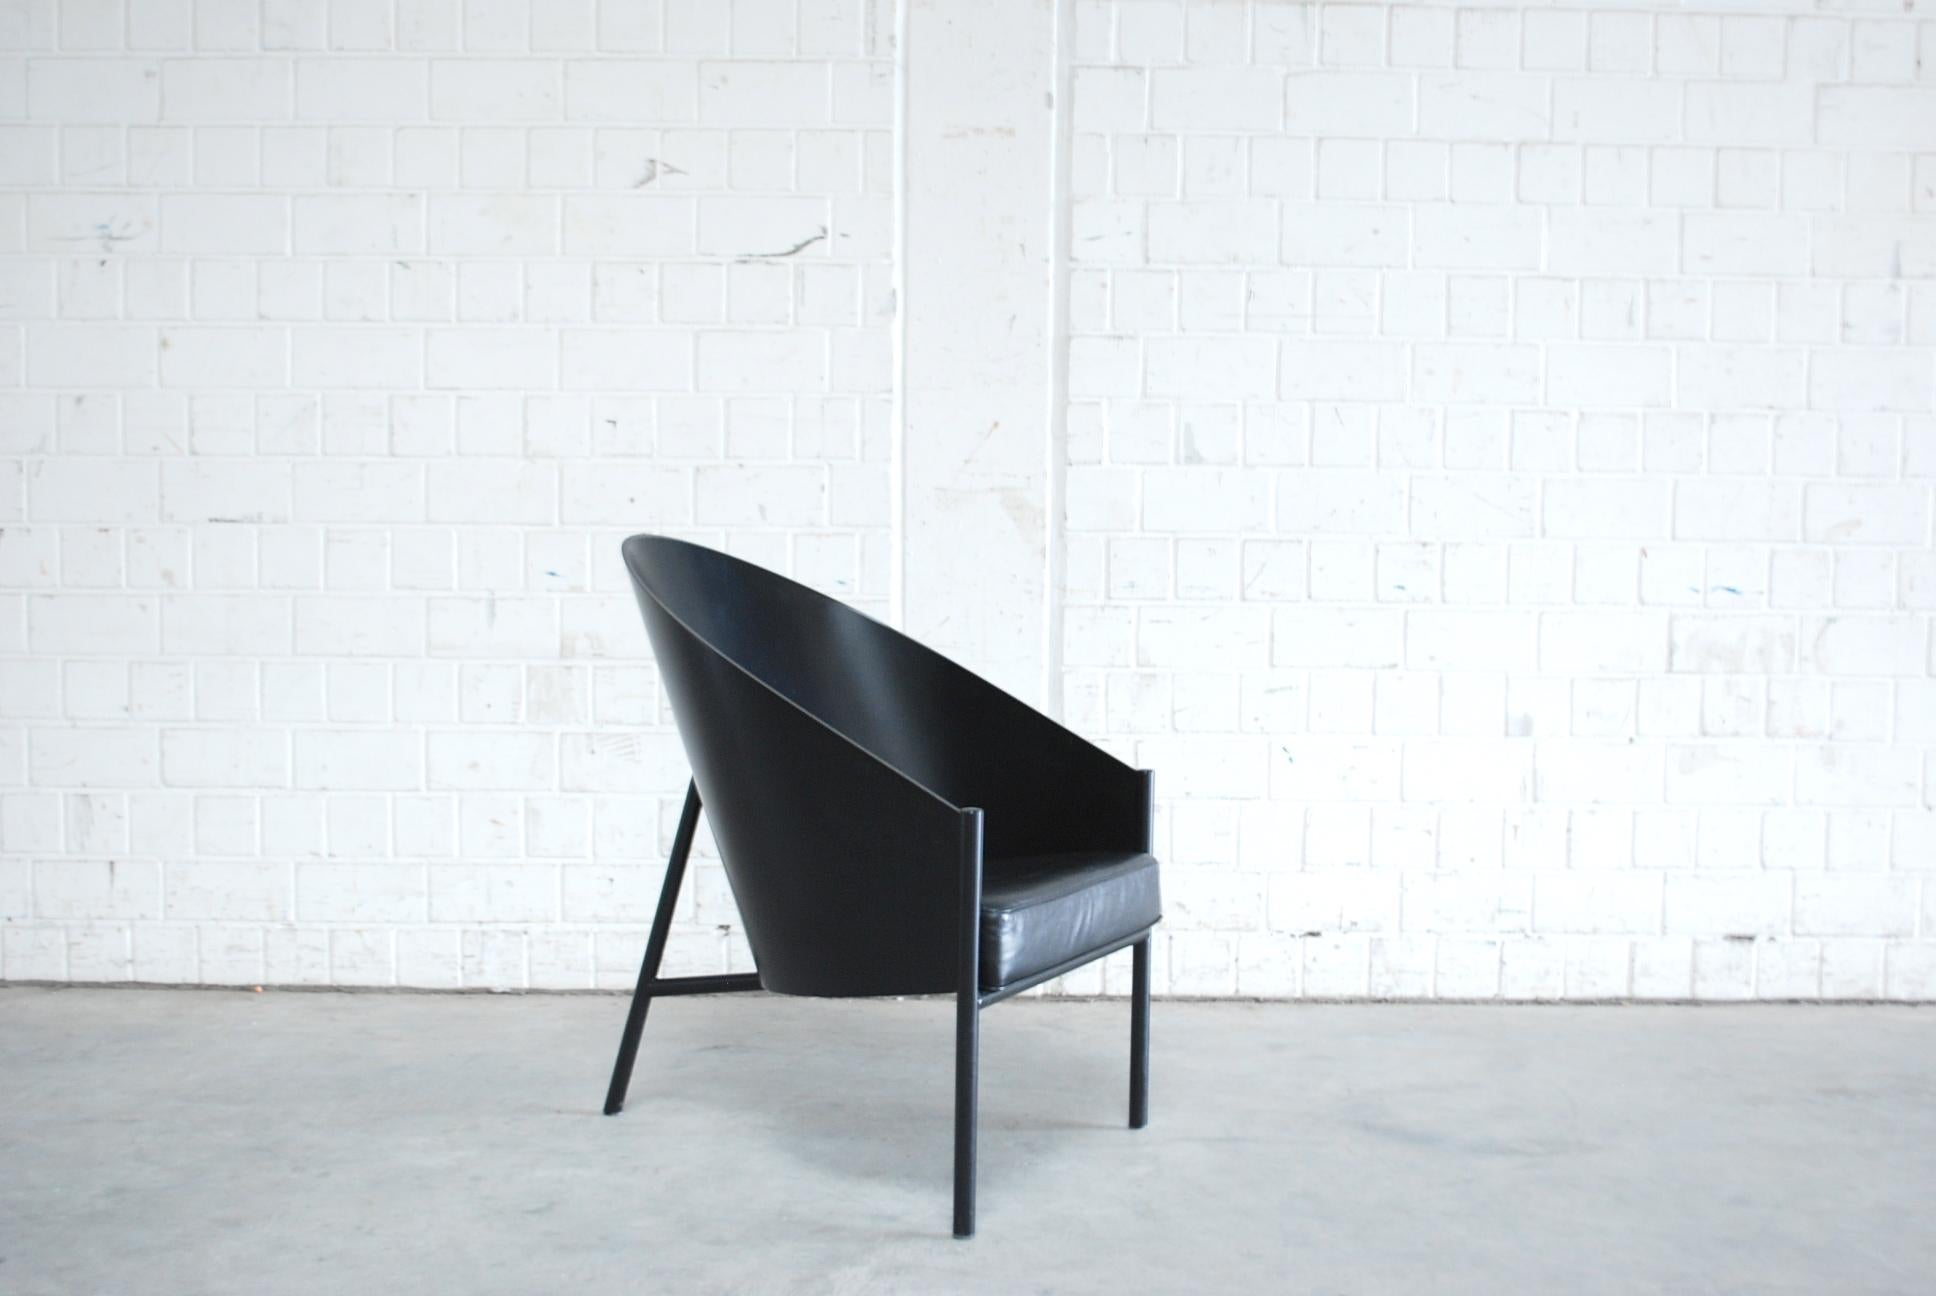 Sessel Modell Pratfall von Philippe Starck für die italienische Manufaktur Driade Aleph.
Schwarzes Leder und schwarz lackierte Sperrholzschale auf schwarzem Stahlrohr.
Dieser Sessel hat einen hohen Komfort. Viel größer als der Esszimmerstuhl